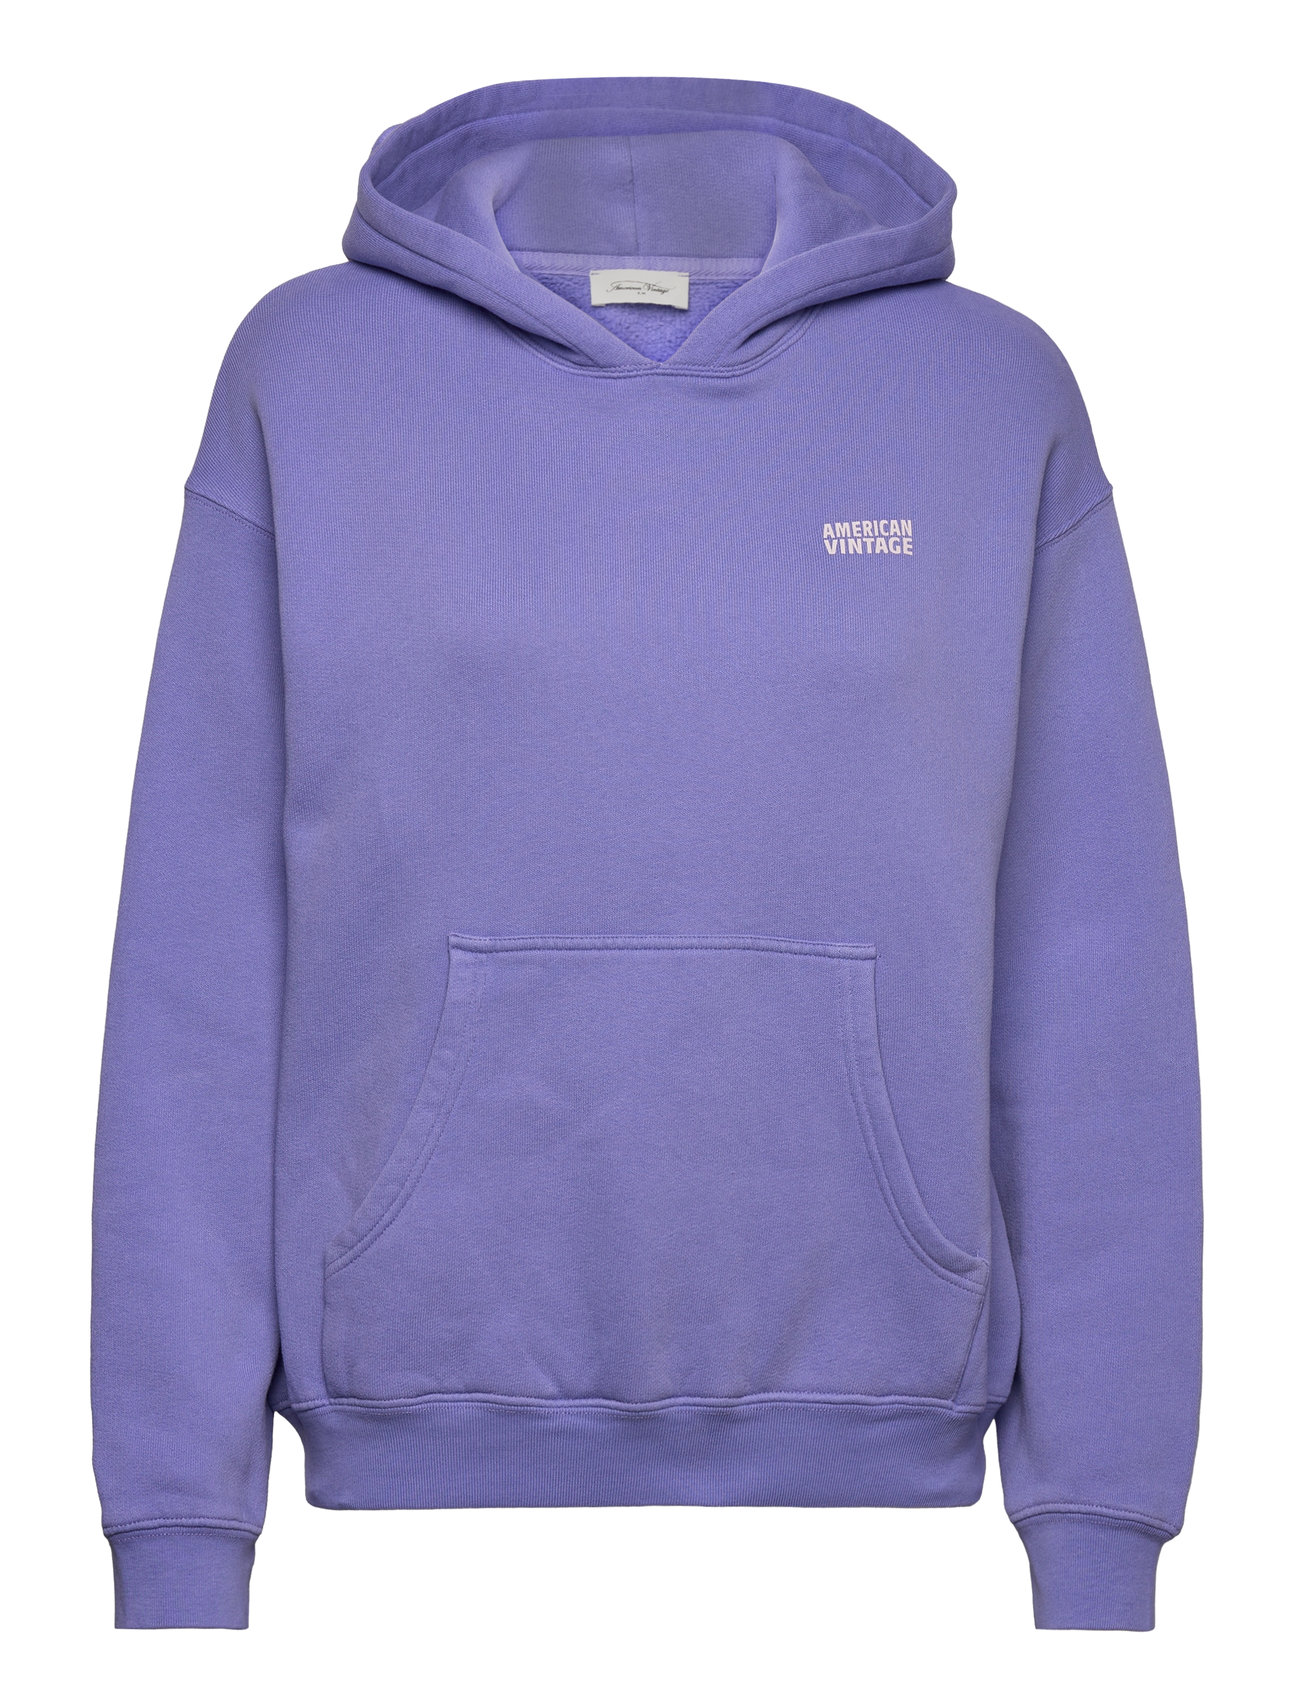 Izubird Tops Sweatshirts & Hoodies Hoodies Purple American Vintage